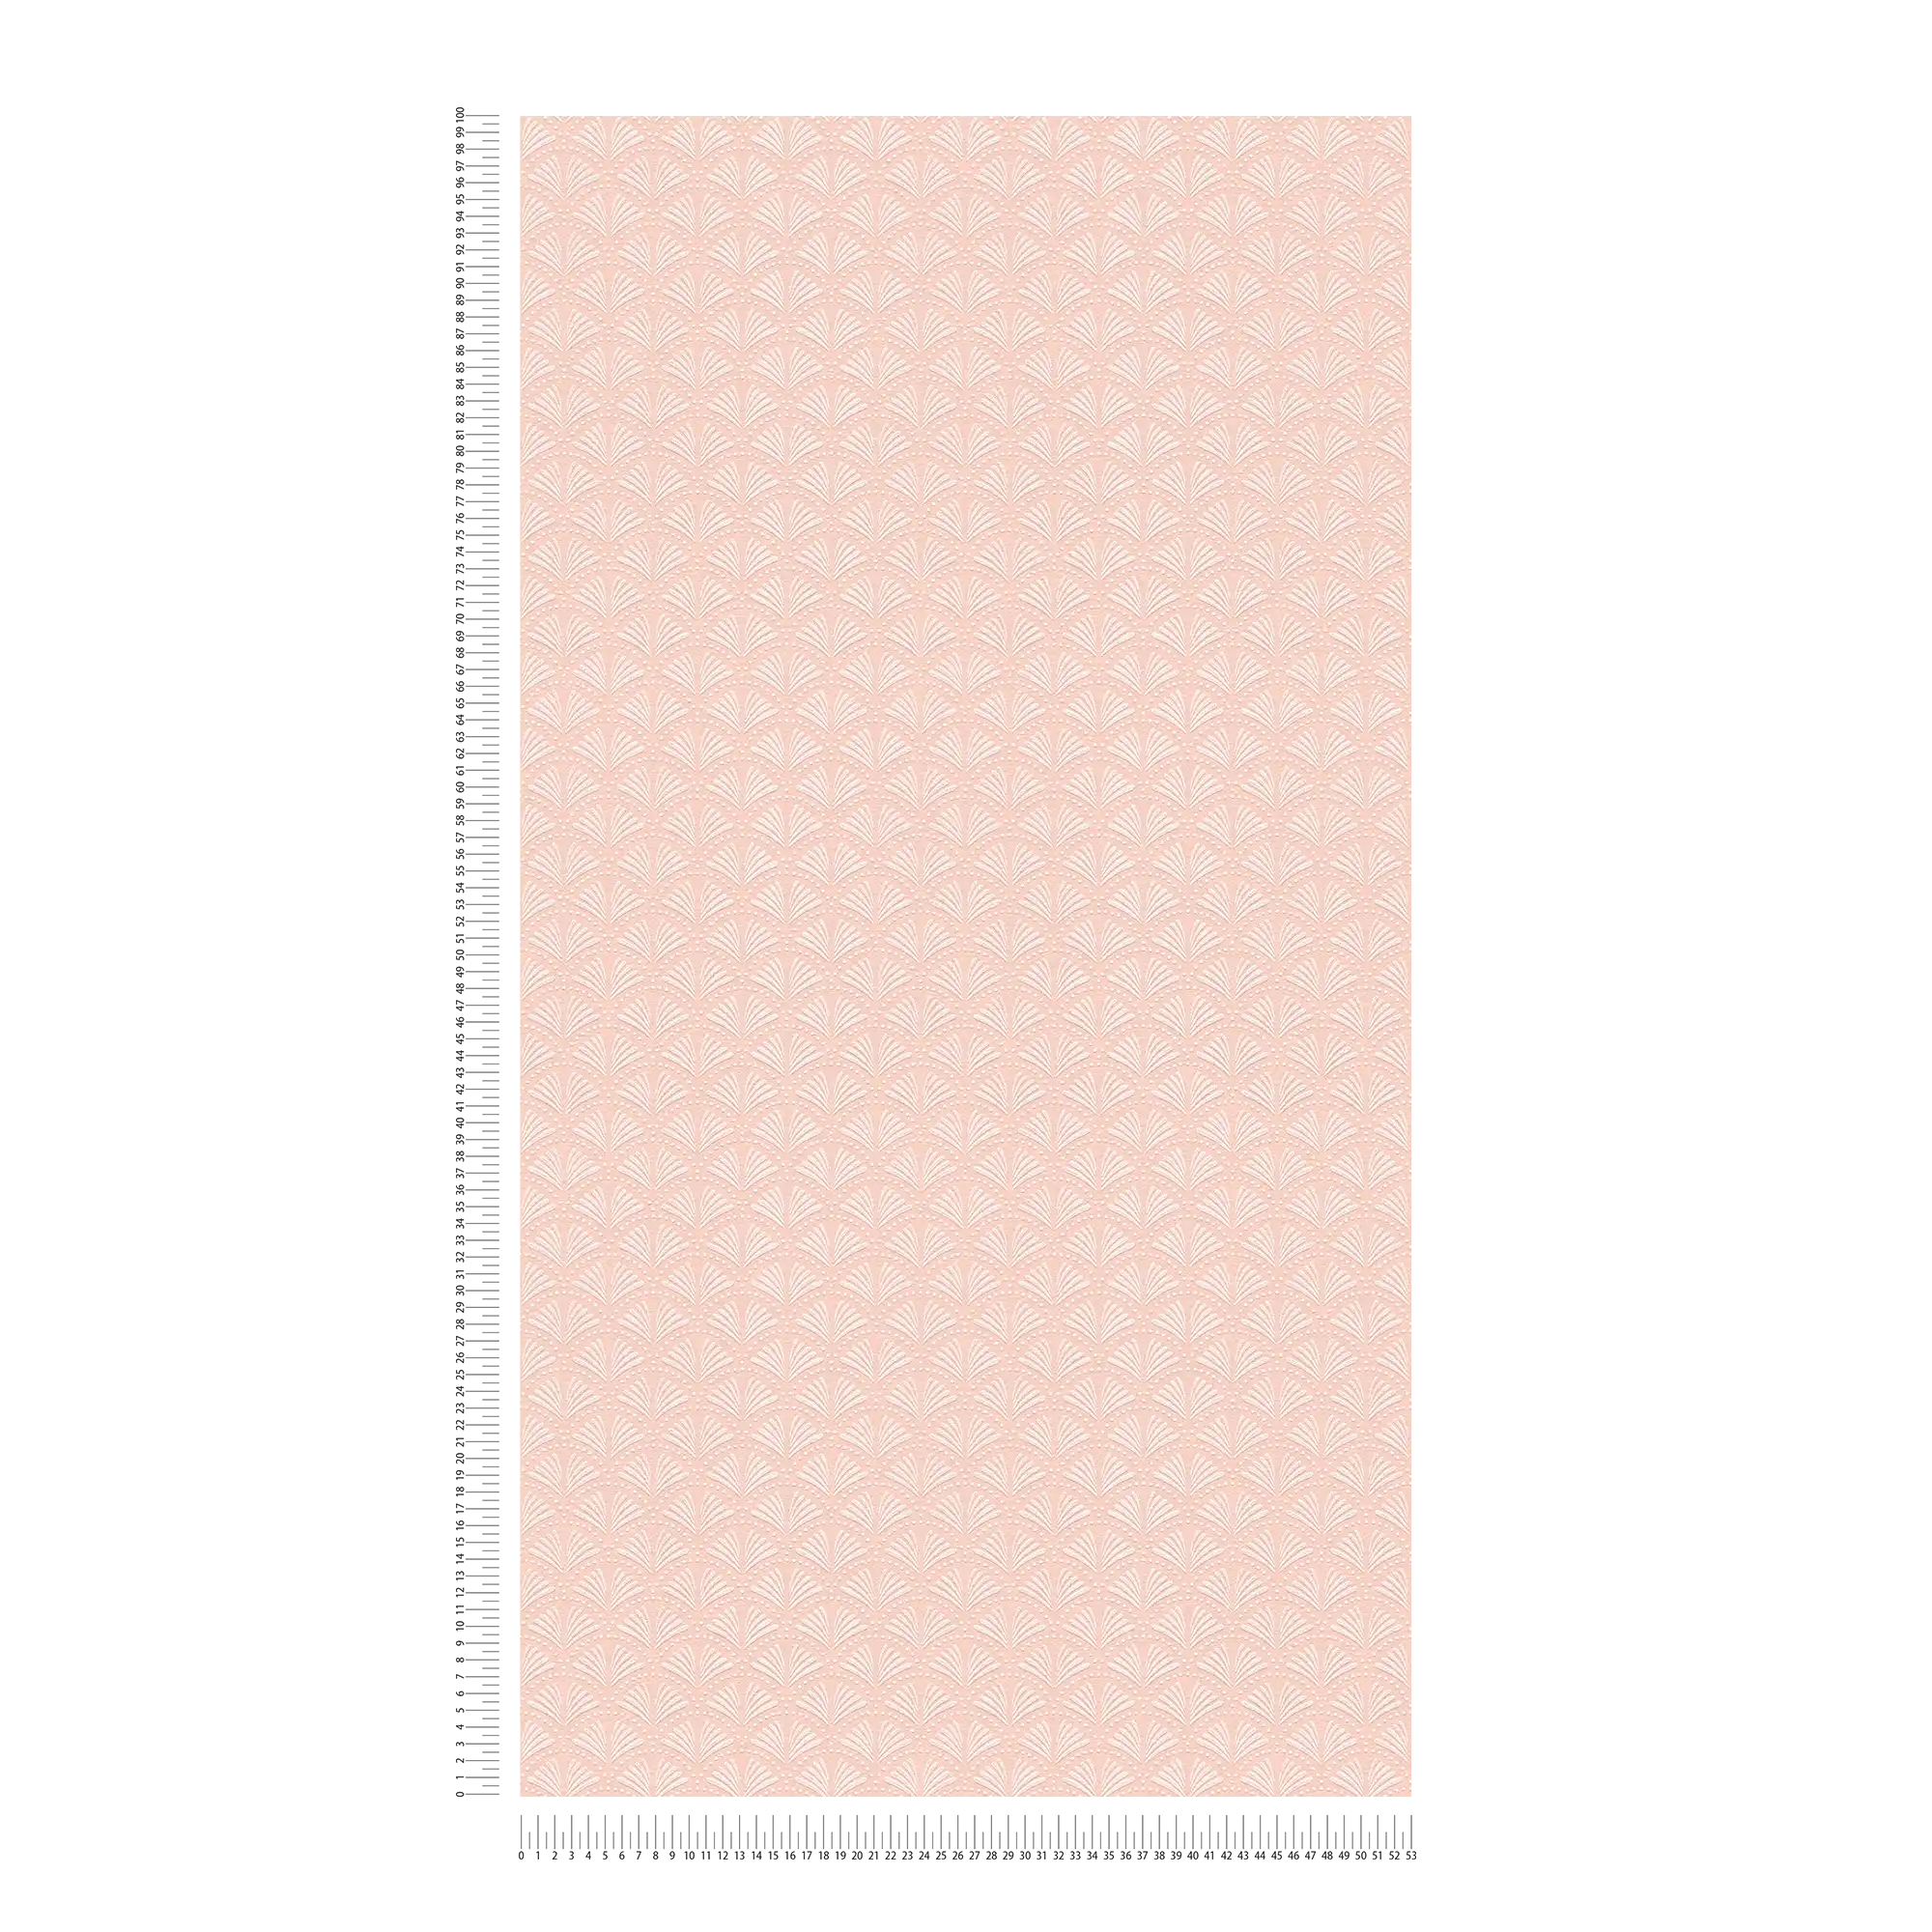             Carta da parati glitterata rosa con design a ventaglio in stile retrò - metallizzata, rosa, bianca
        